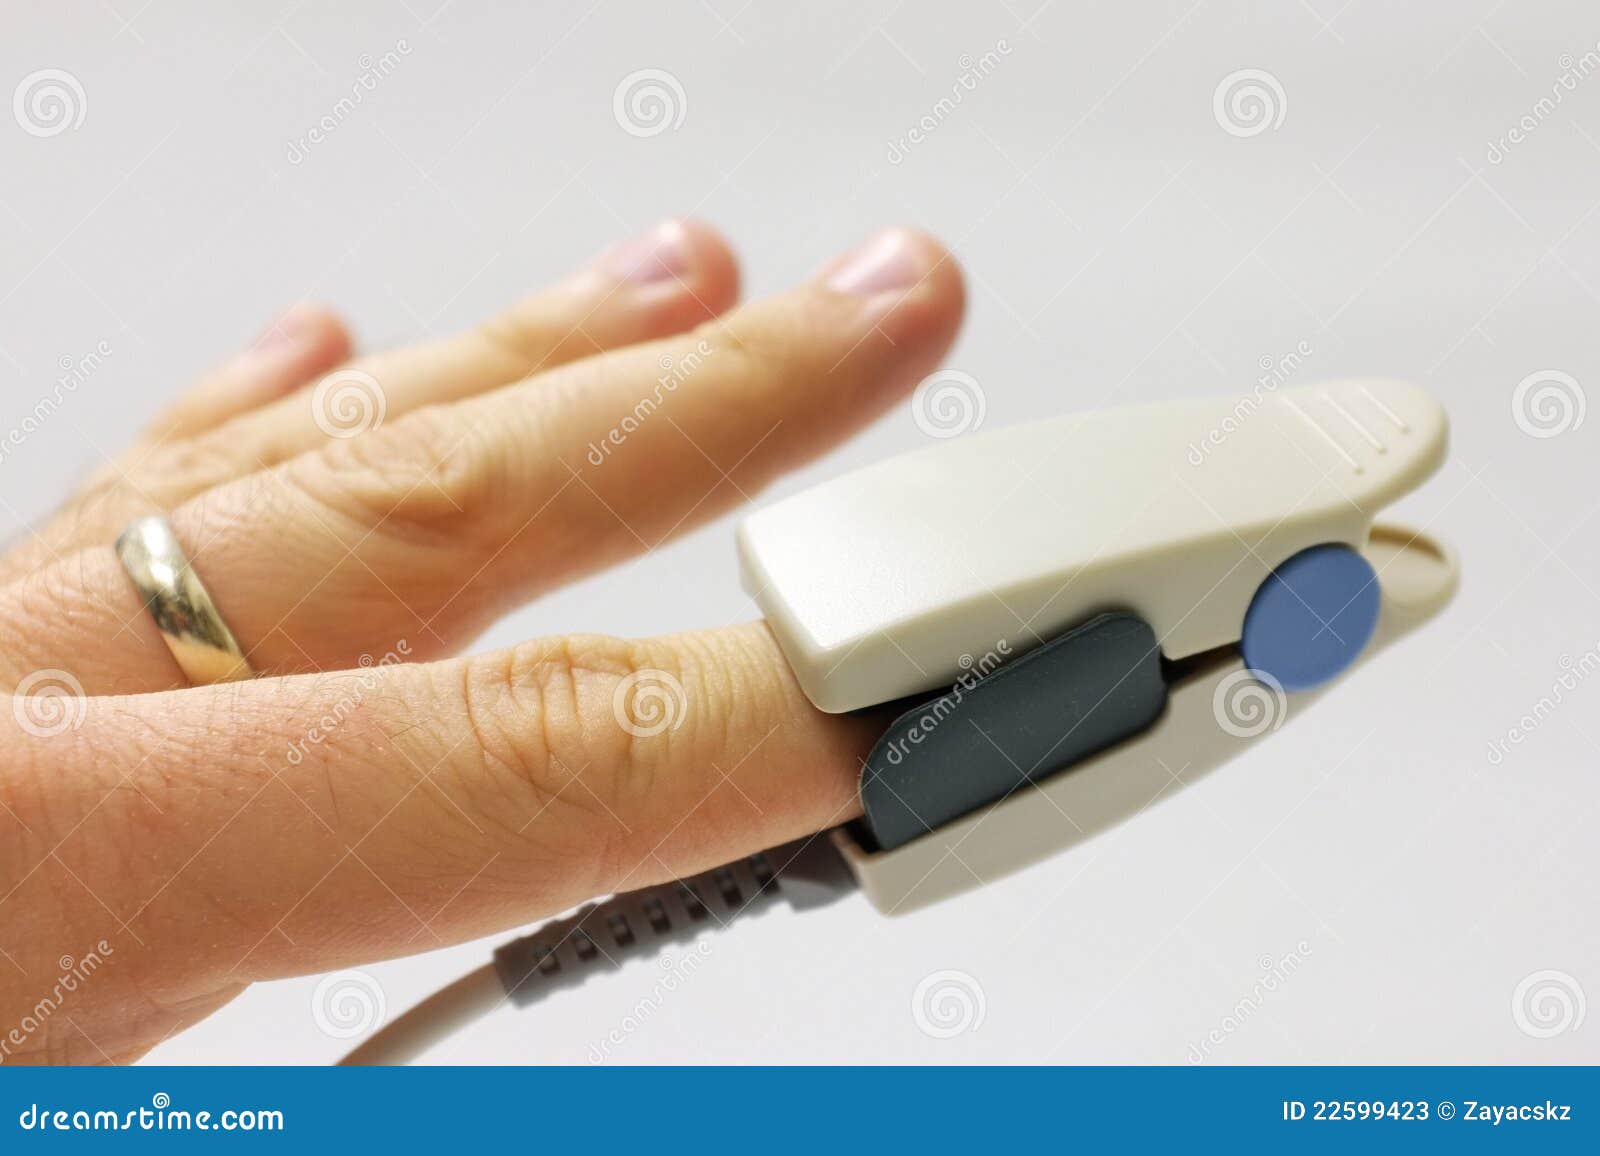 fingertip pulse oximeter sensor placed on finger